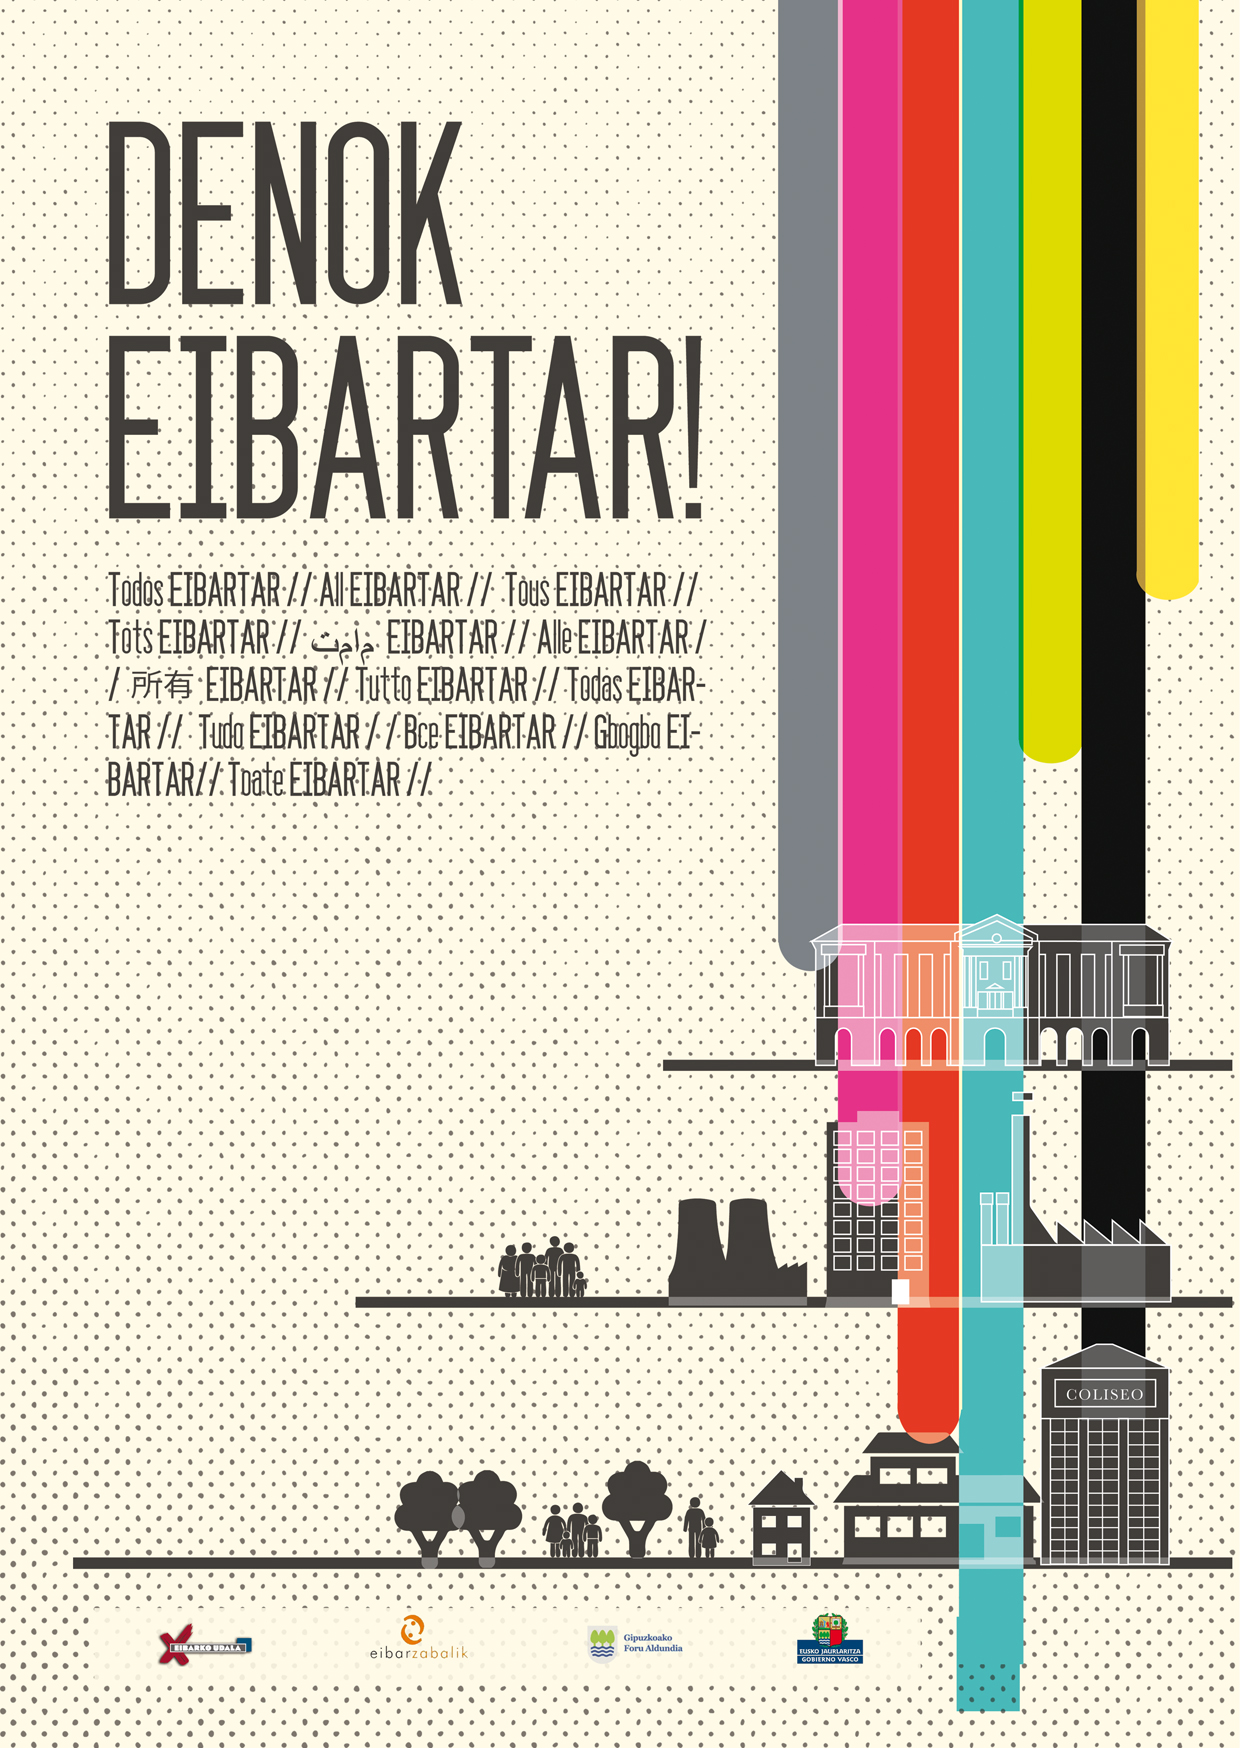 "Denok eibartar!", una campaña de sensibilización para luchar contra el racismo y la xenofobia